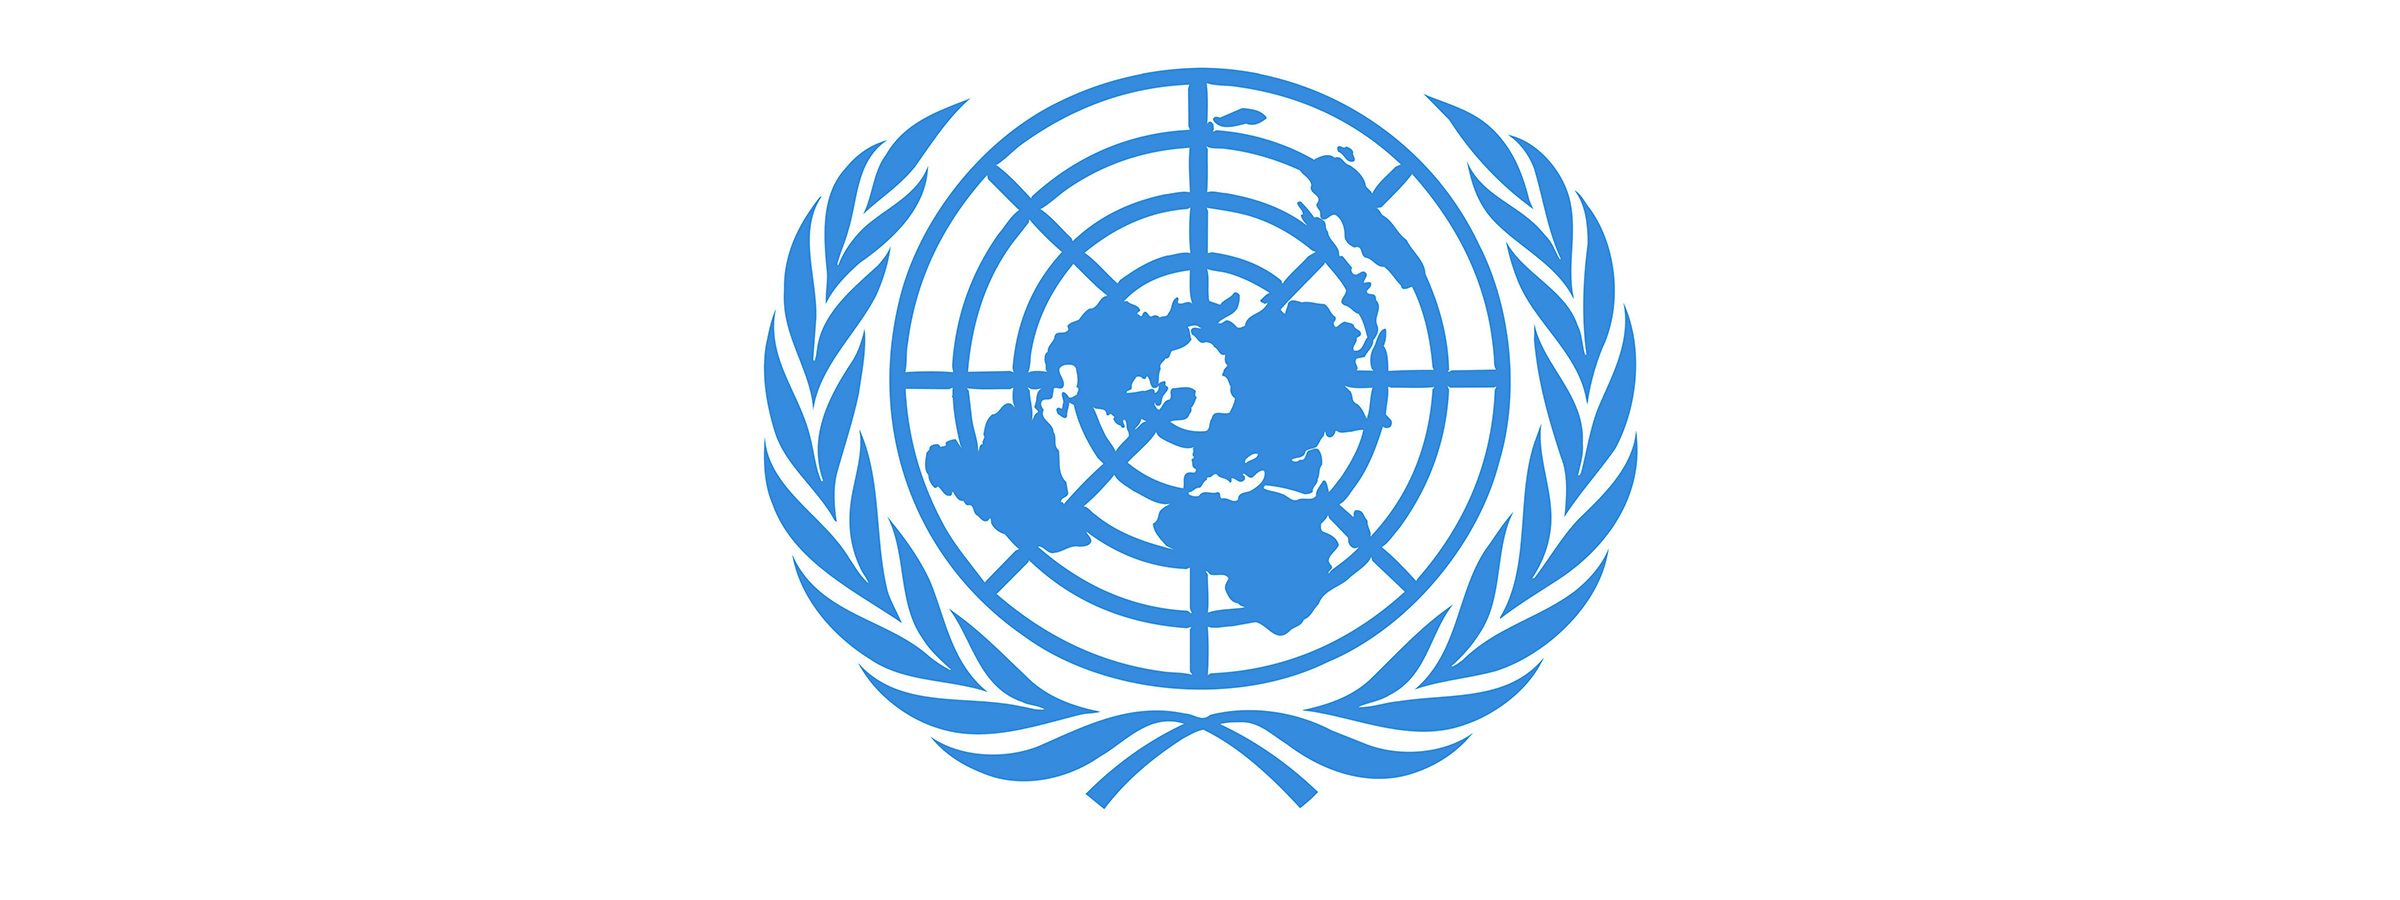 Экономические комиссии оон. Европейская экономическая комиссия ООН (ЕЭК). Логотип ООН. Флаг организации Объединенных наций. Организация Объединённых наций ООН эмблема.